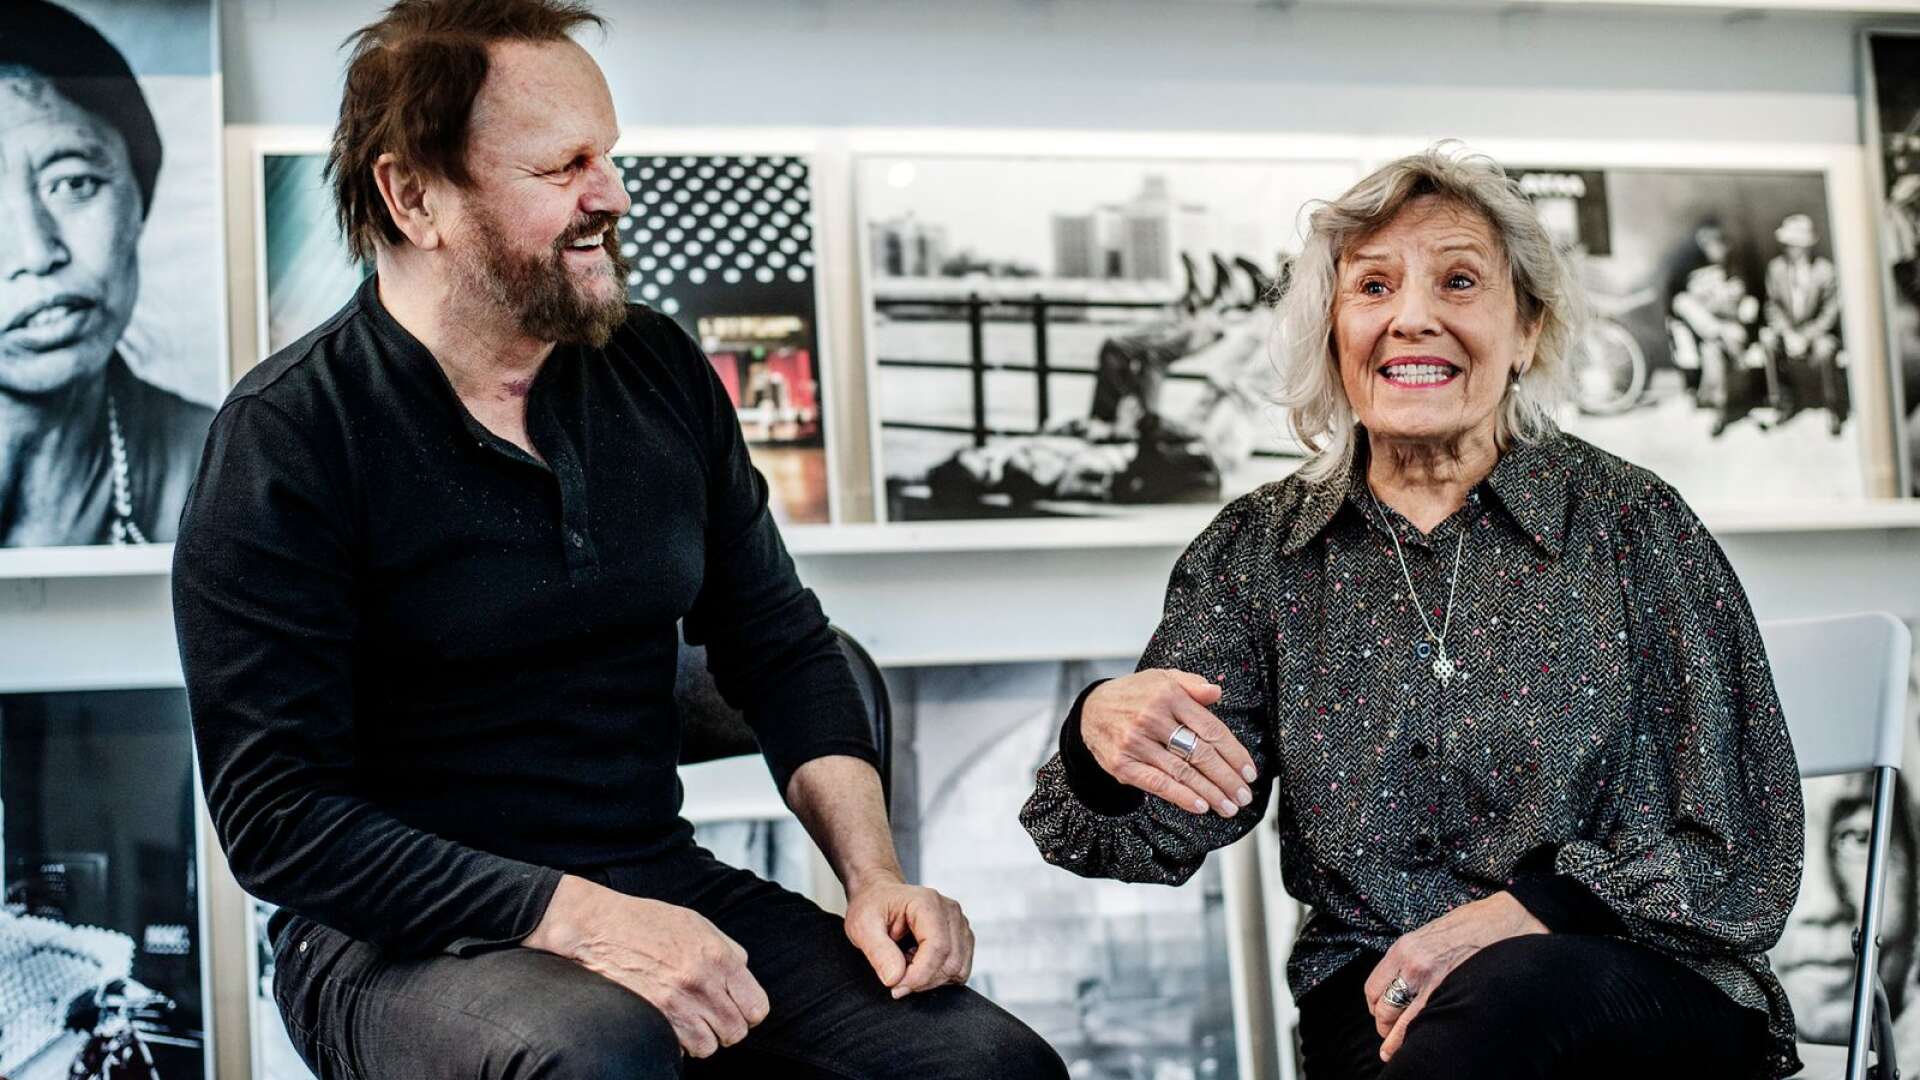 New York, Svalbard, Indien, Nya Zeeland. Dokumentärfilmskaparna Dan Nilsson och Eva Akre har sannerligen rest runt. På Galleri Värmland i Karlstad visas nu deras stillbilder från alla upplevelser. 